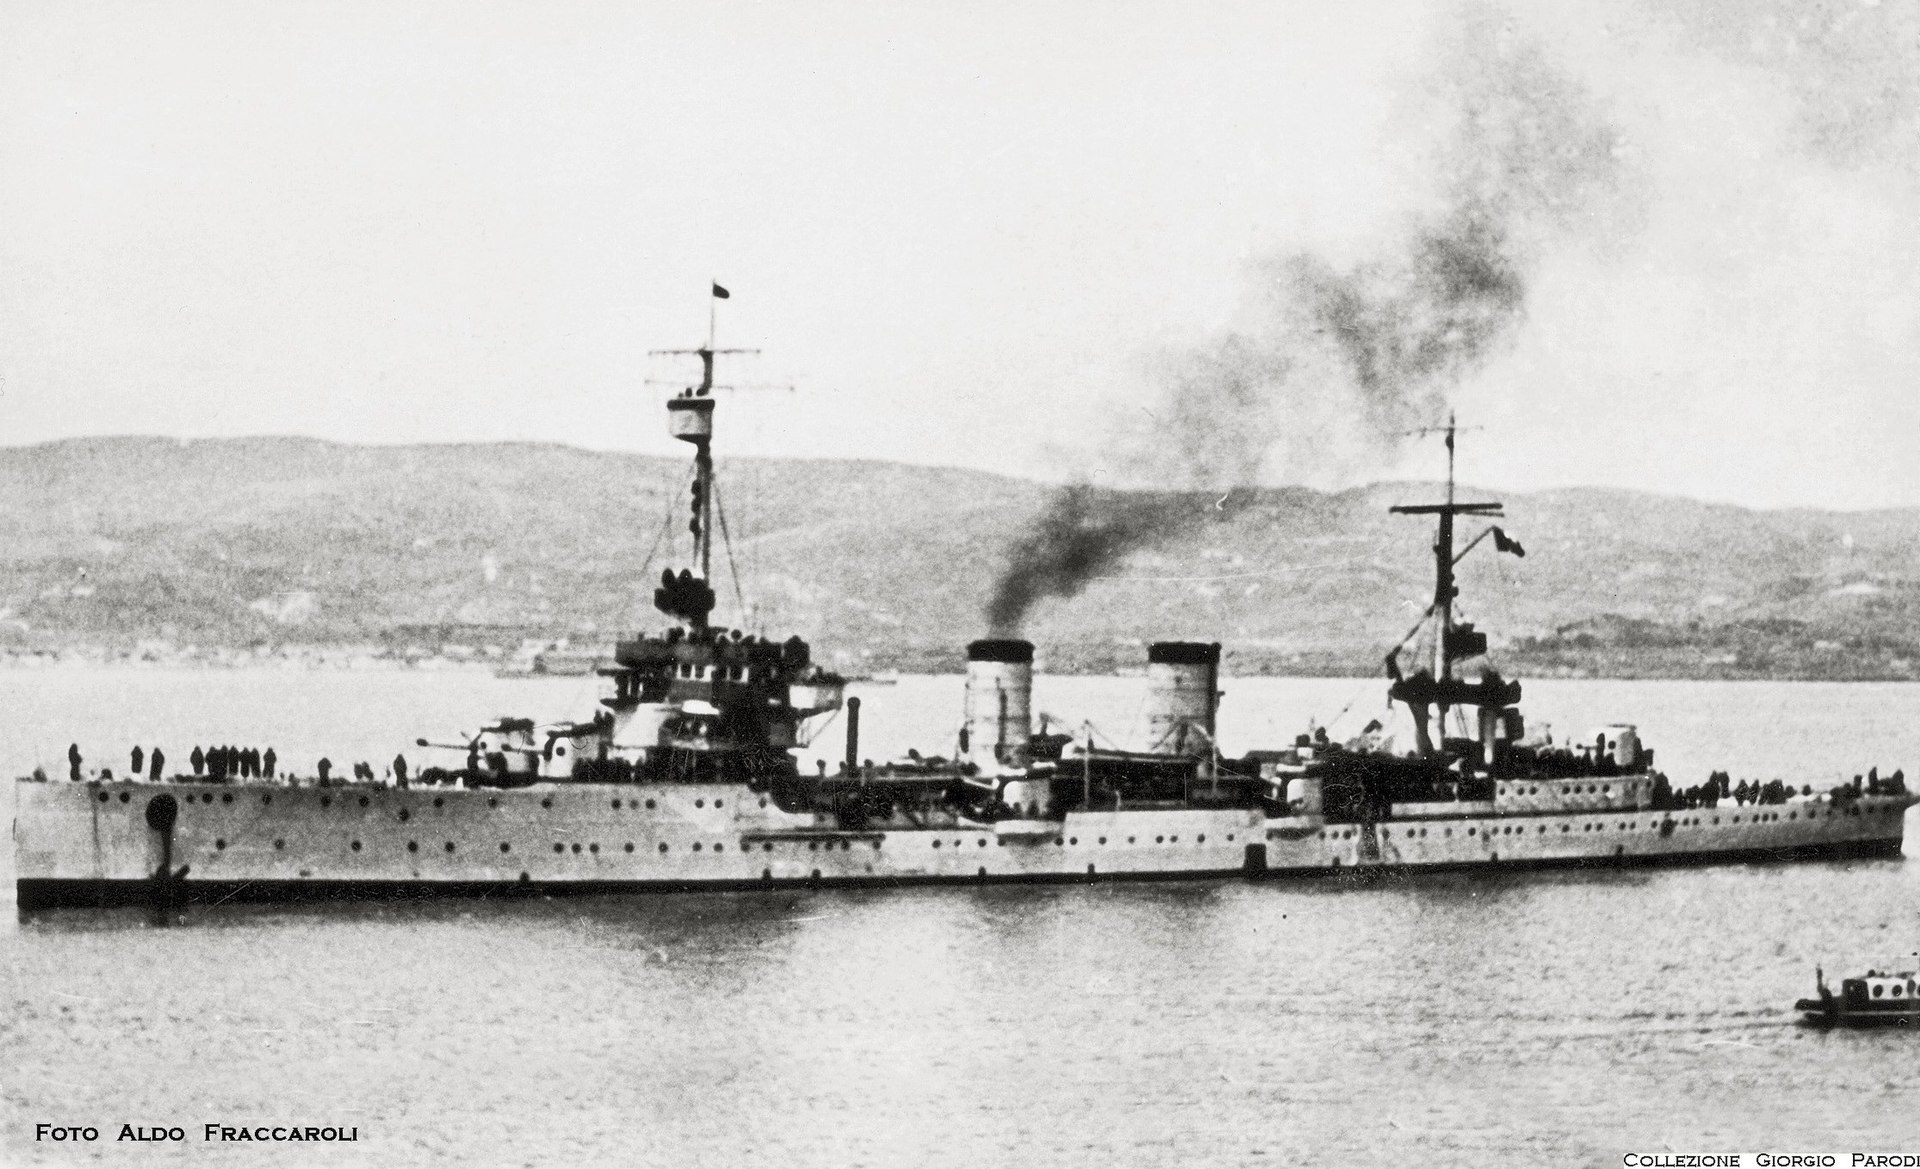 二战中的巴里号轻巡洋舰,原德国海军皮劳号(sms pillau ),此时已经